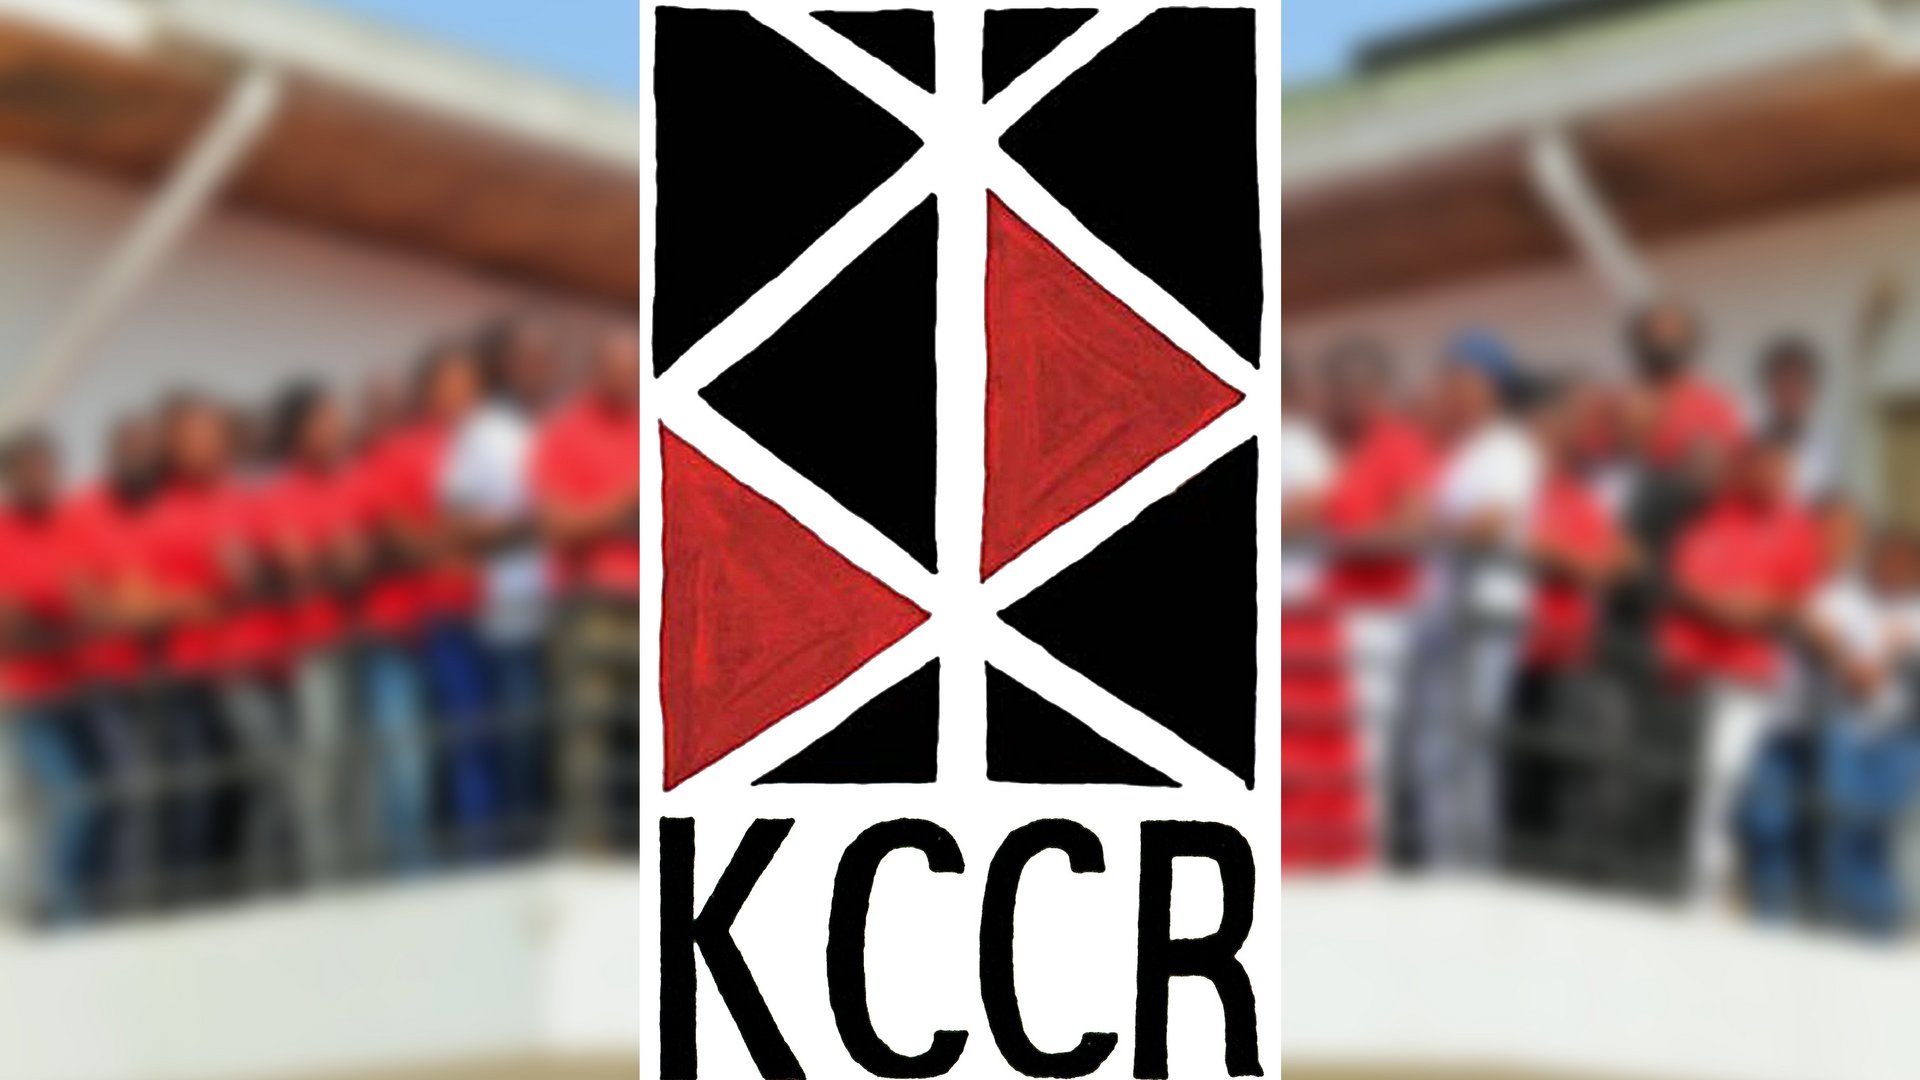 Das Bild zeigt das rot-schwarze Logo des KCCR, dahinter verschwommen die Mitarbeitenden des Instituts auf dem Instituts-Balkon.